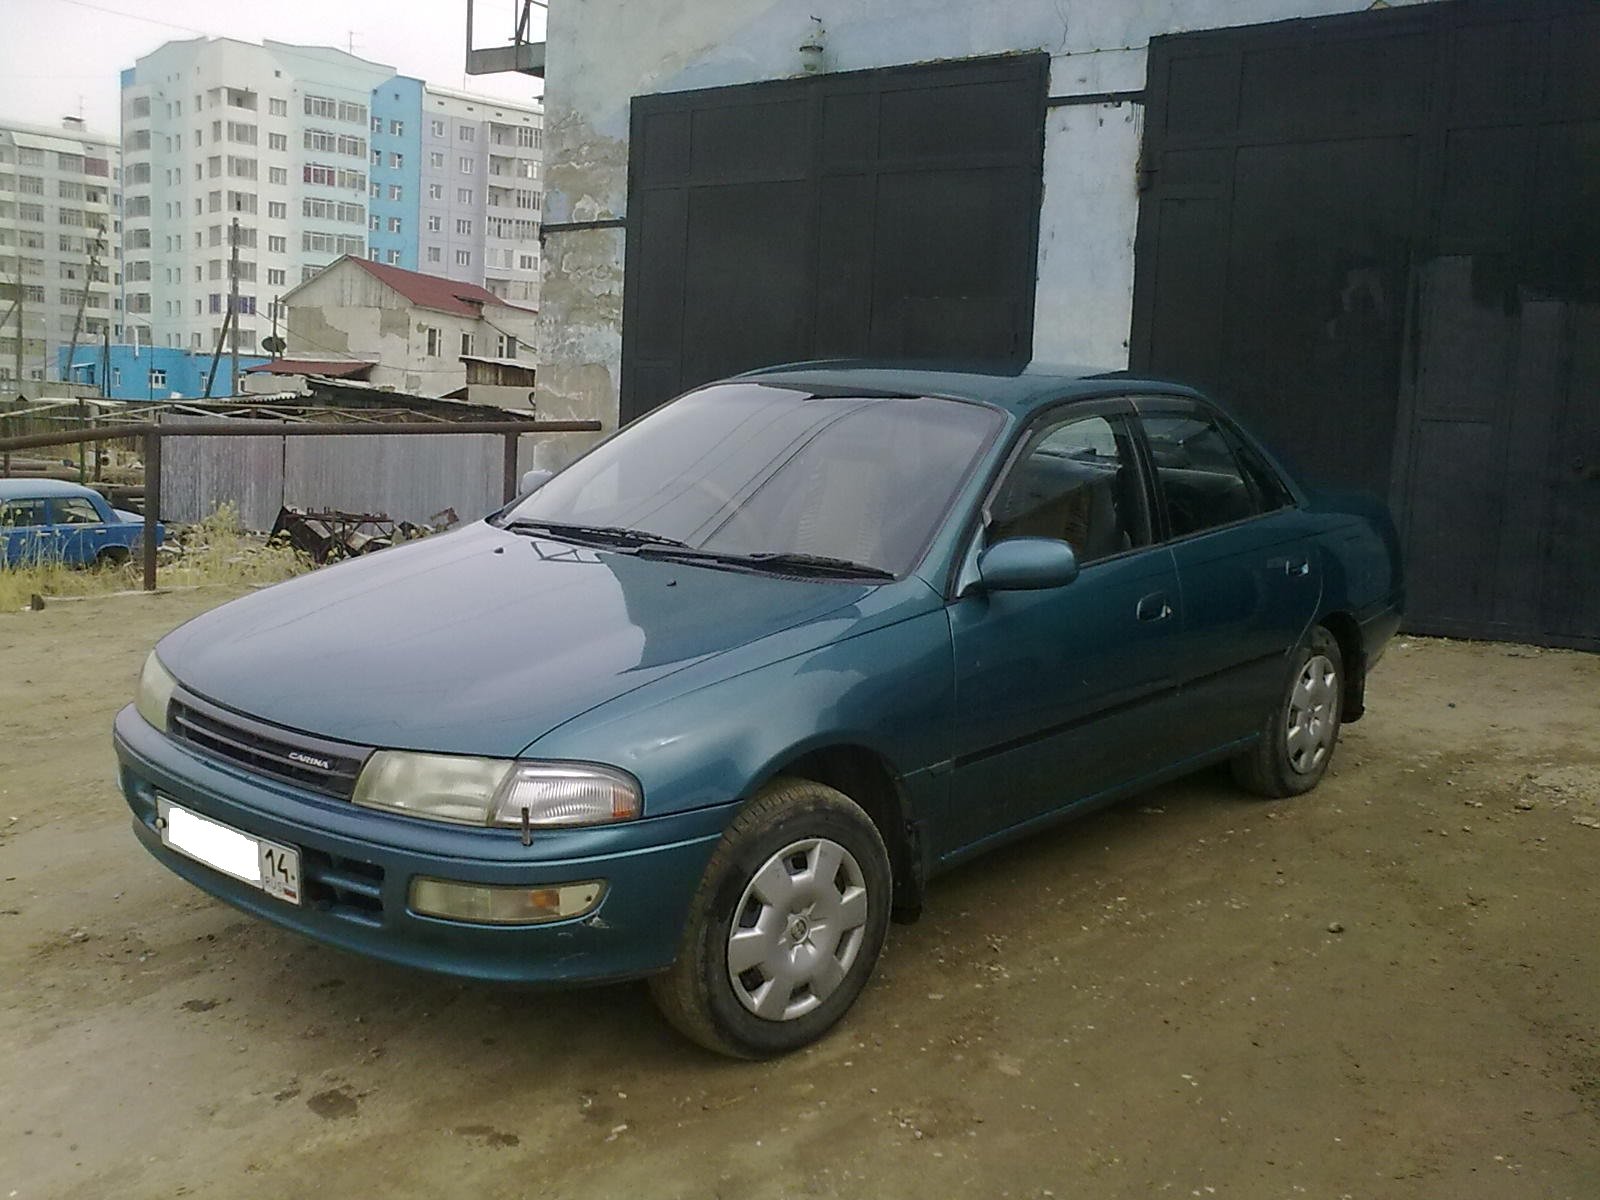 Тойота Карина улыбка 1996